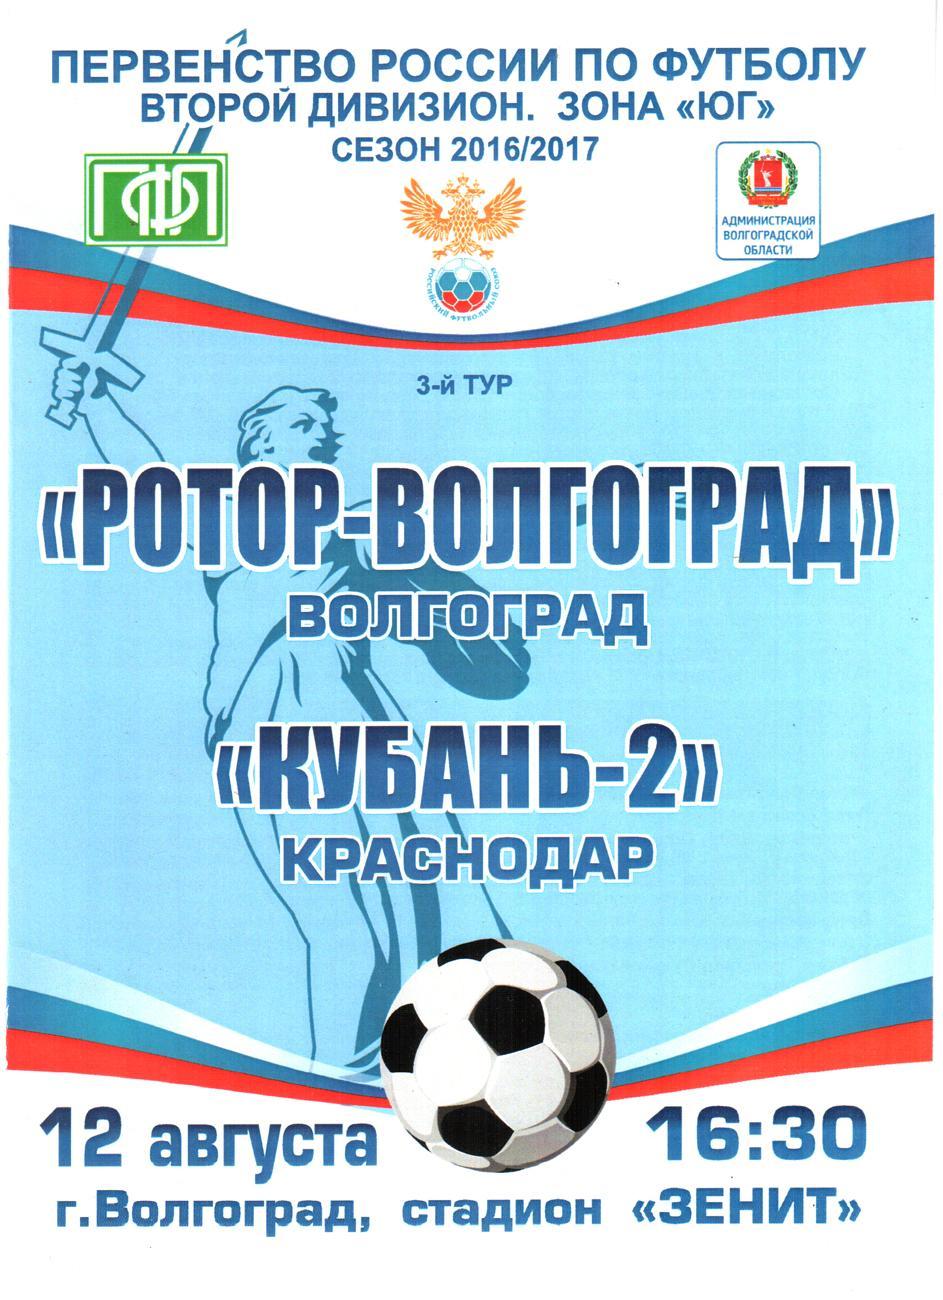 Ротор-Волгоград - Кубань-2 (Краснодар) 2016